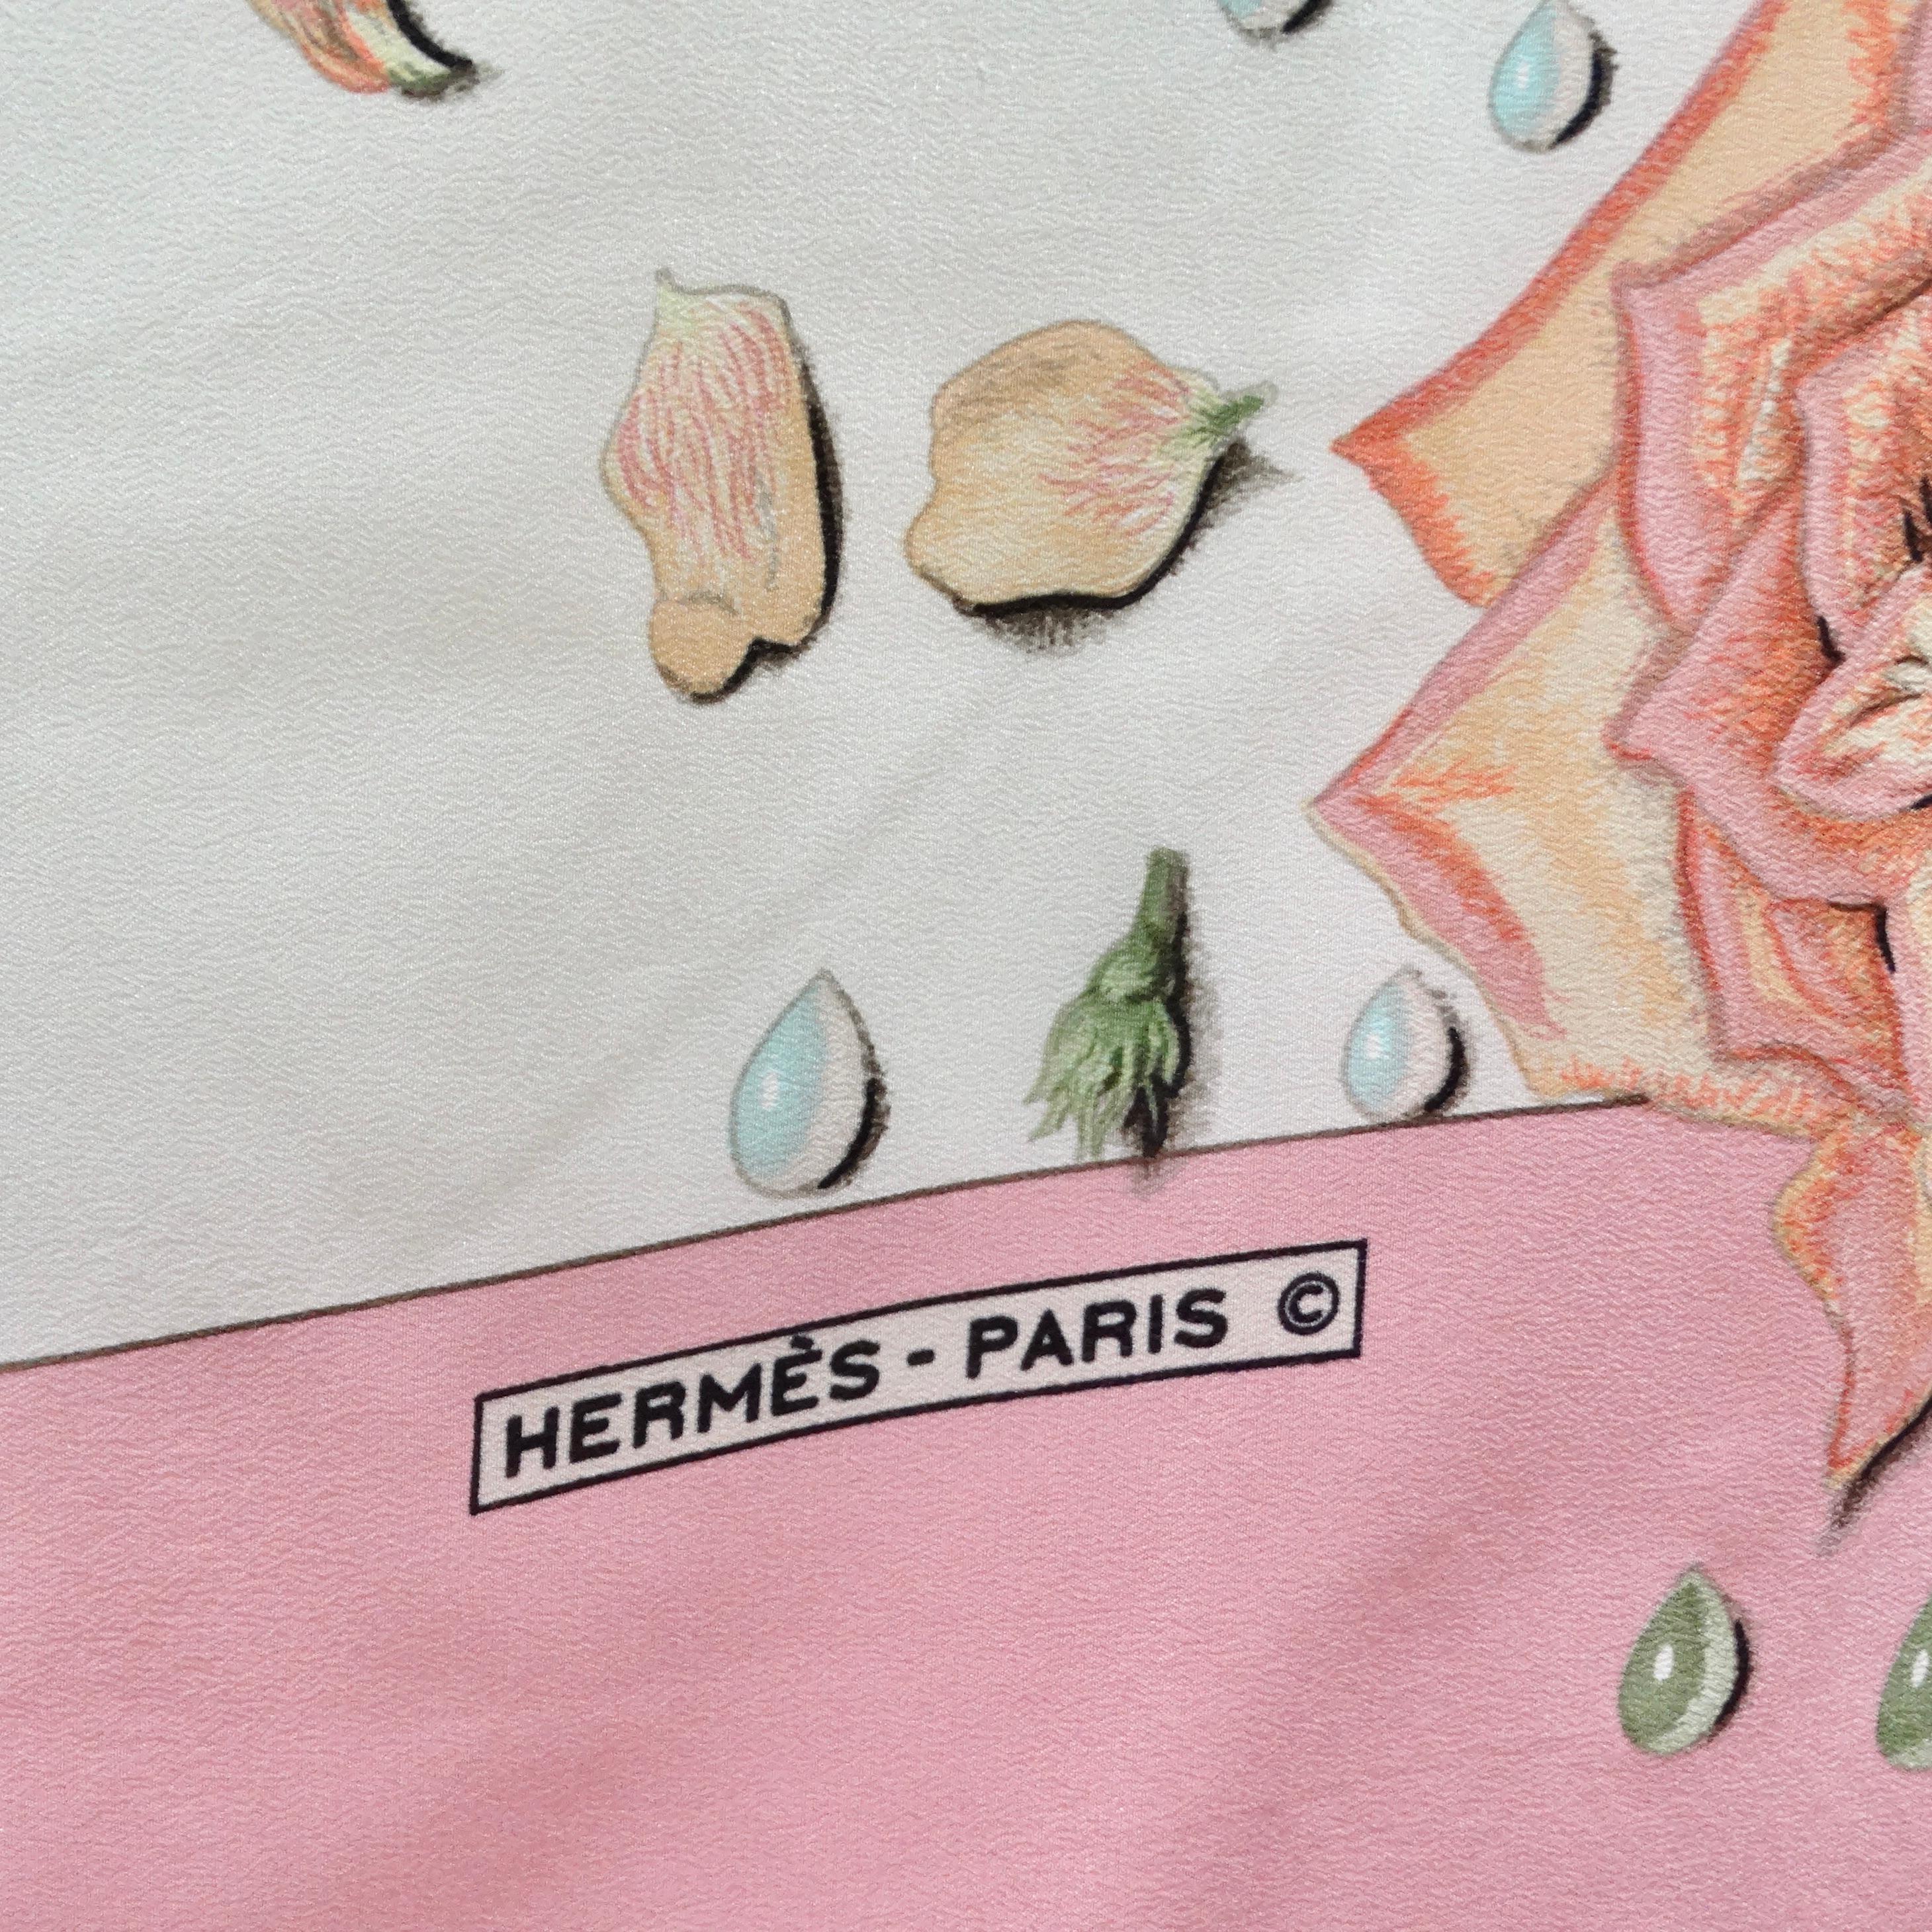 Voici le châle en soie Hermes 1960s La Rosee, une pièce vraiment exquise et rare qui incarne l'élégance et le luxe intemporels d'Hermes. Confectionné dans la soie la plus fine, ce châle arbore l'imprimé floral emblématique de La Rosee, qui